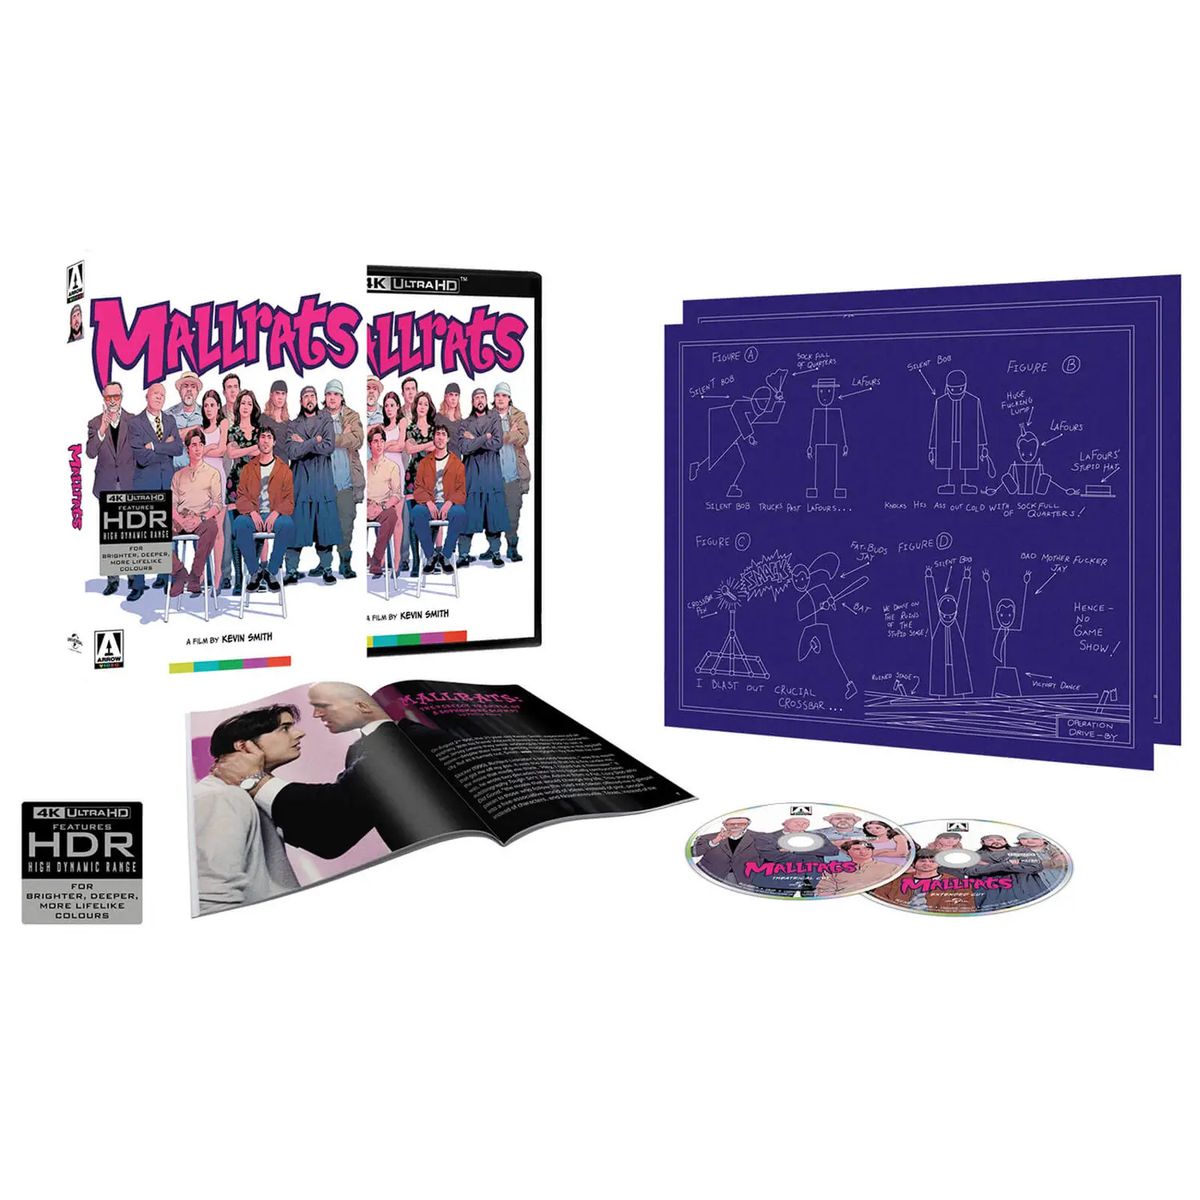 Спеціальне видання відео «Mallrats from Arrow», яке включає кілька дисків Blu-ray, буклет і схему Джея та Мовчазного Боба.